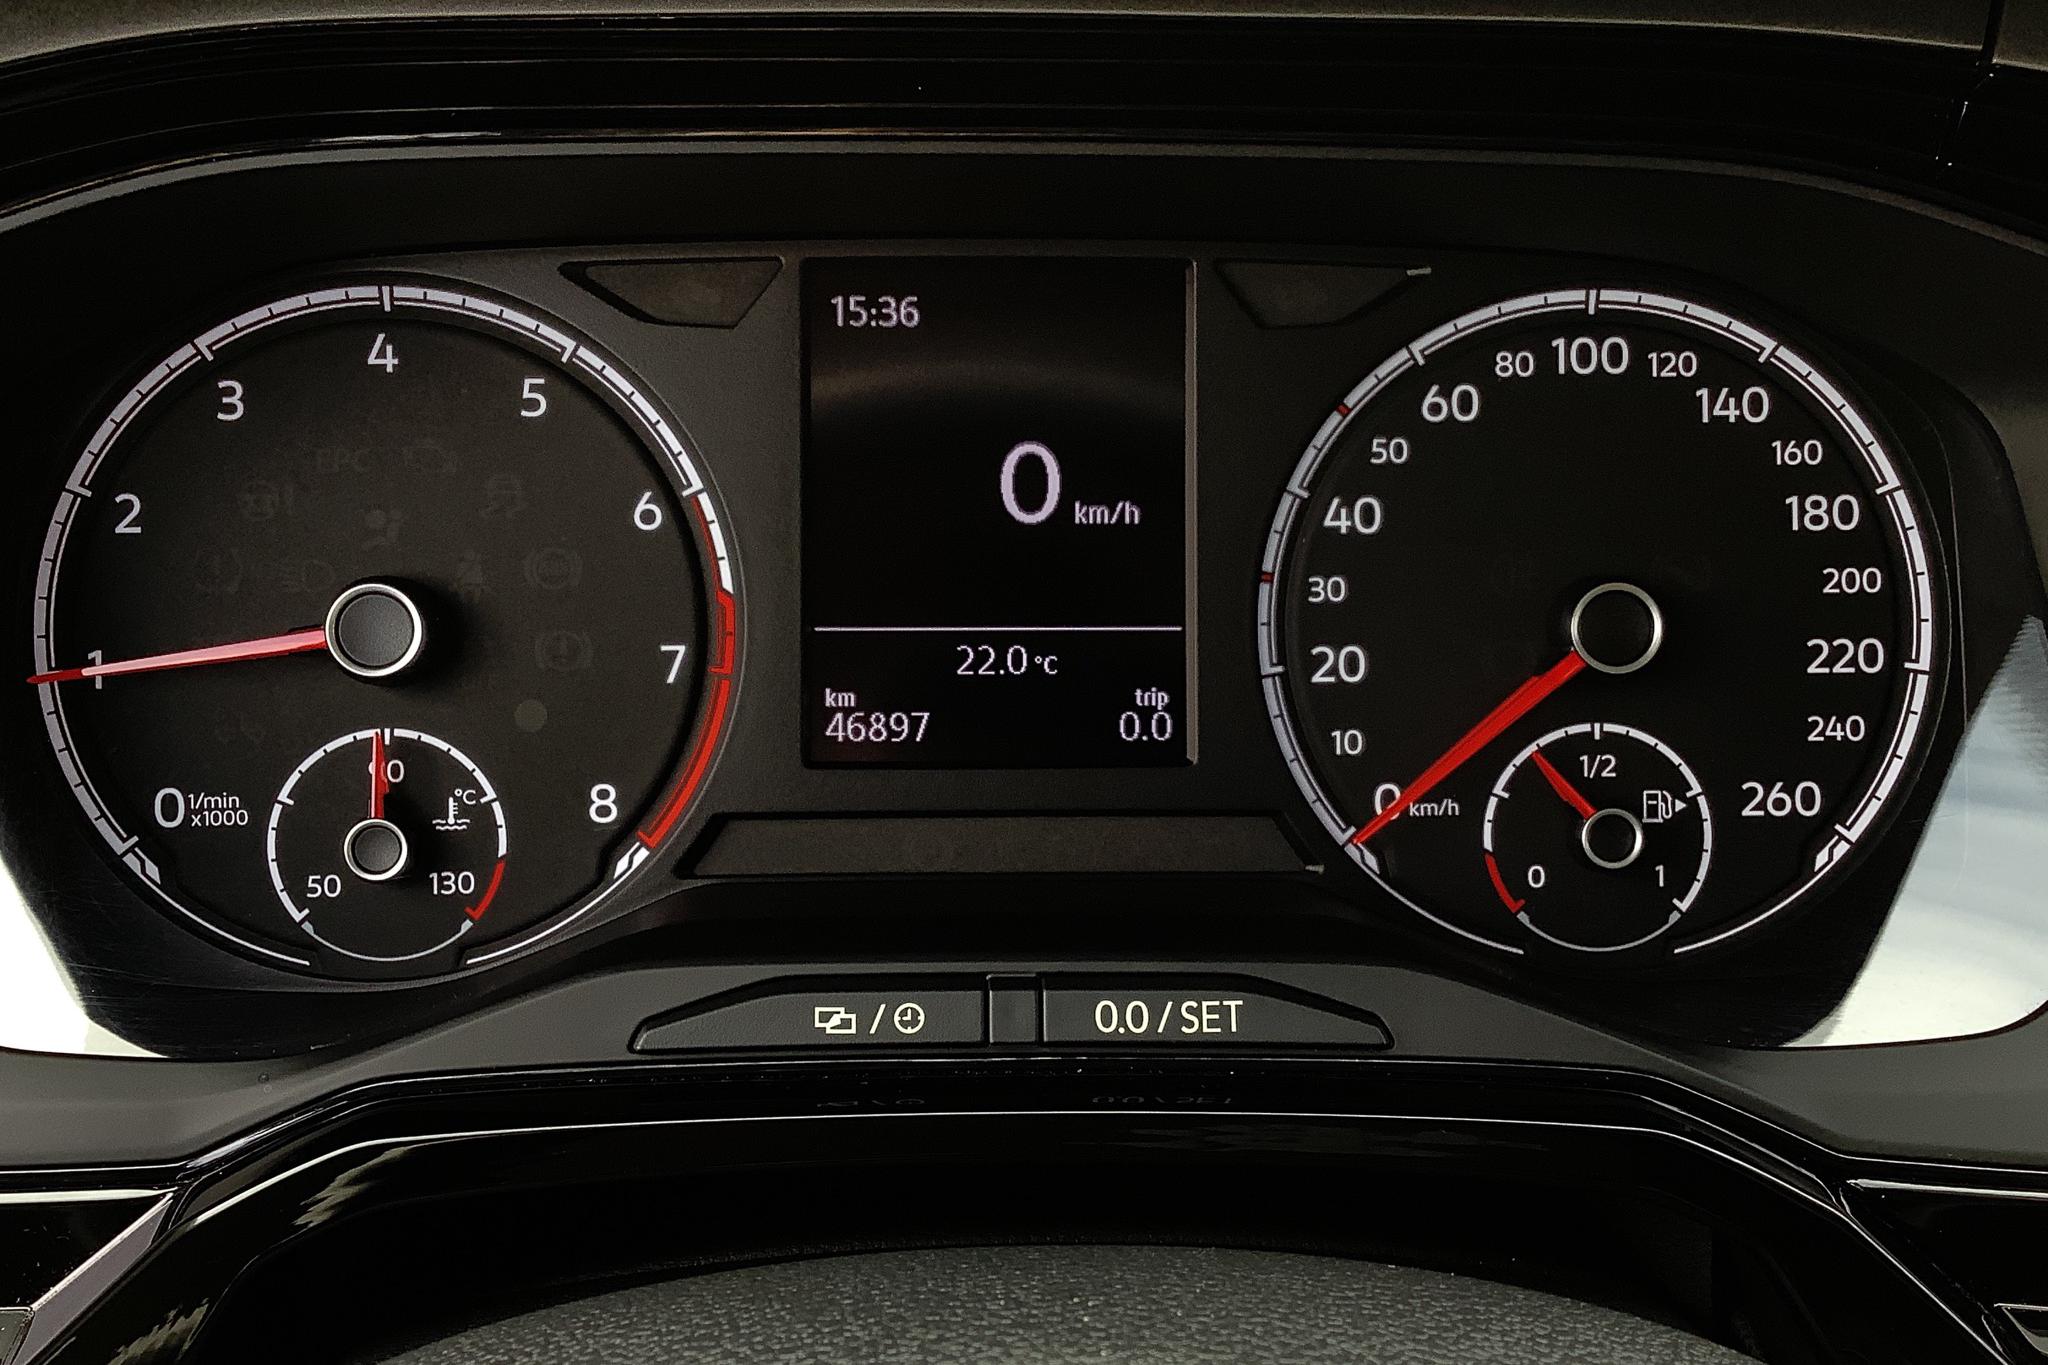 VW Polo 1.0 TSI 5dr (95hk) - 46 900 km - Manual - orange - 2018